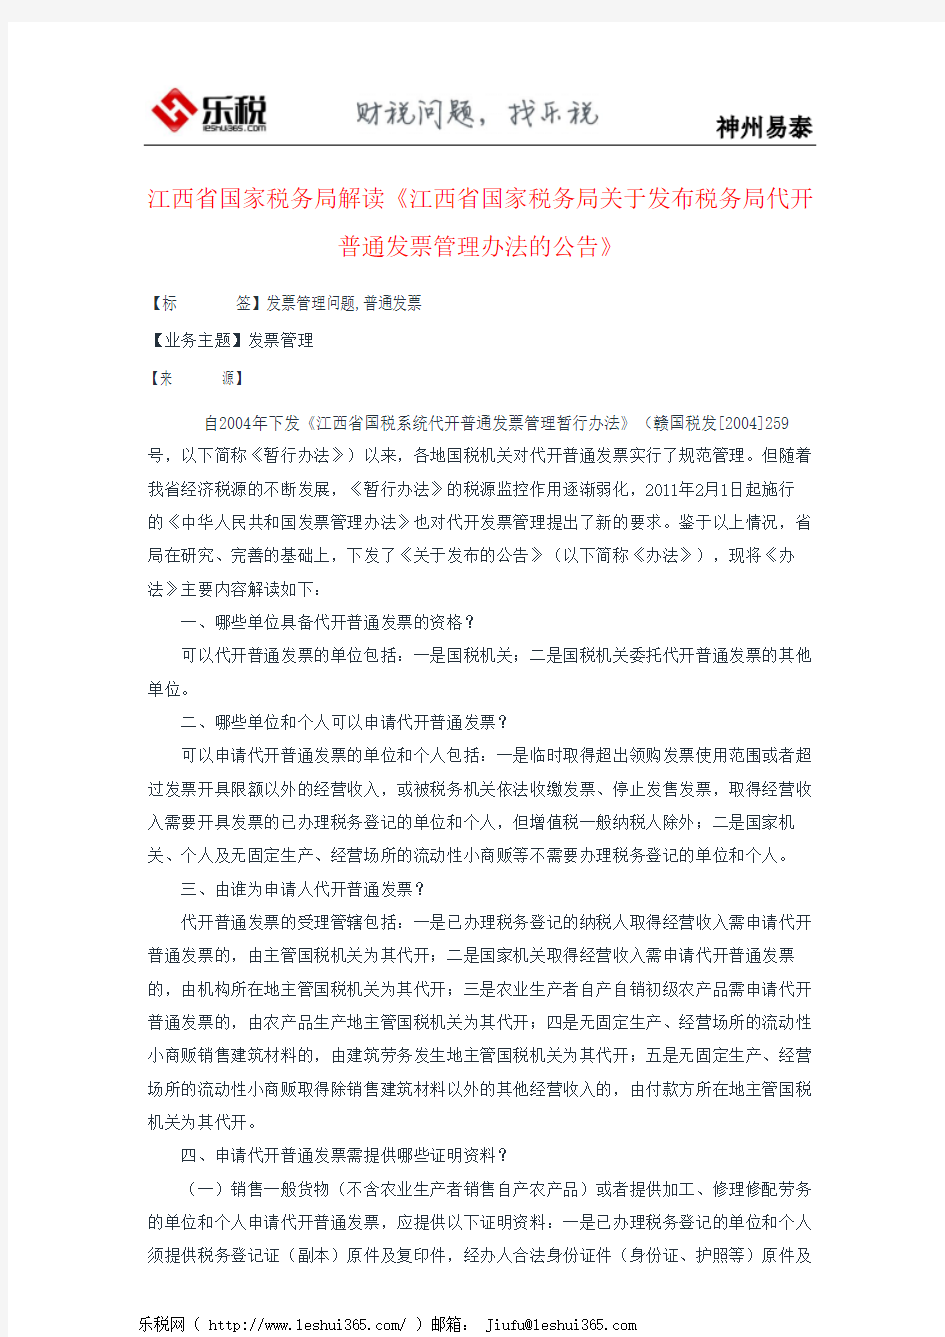 江西省国家税务局解读《江西省国家税务局关于发布税务局代开普通